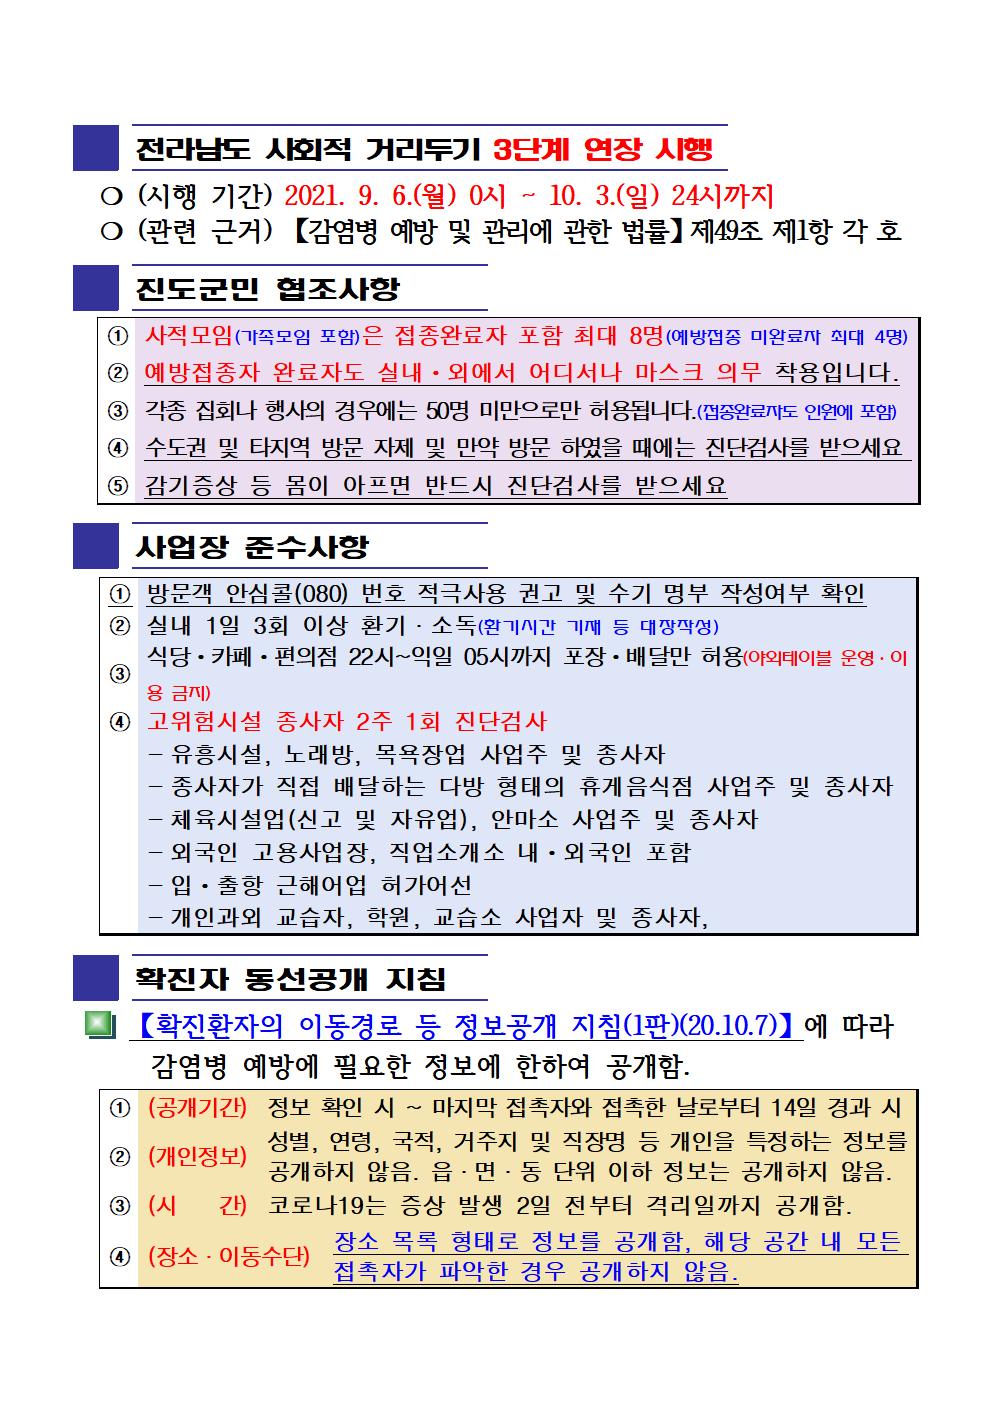 2021년 코로나 19 대응 일일상황보고(9월 13일 24시 기준) 첨부#2